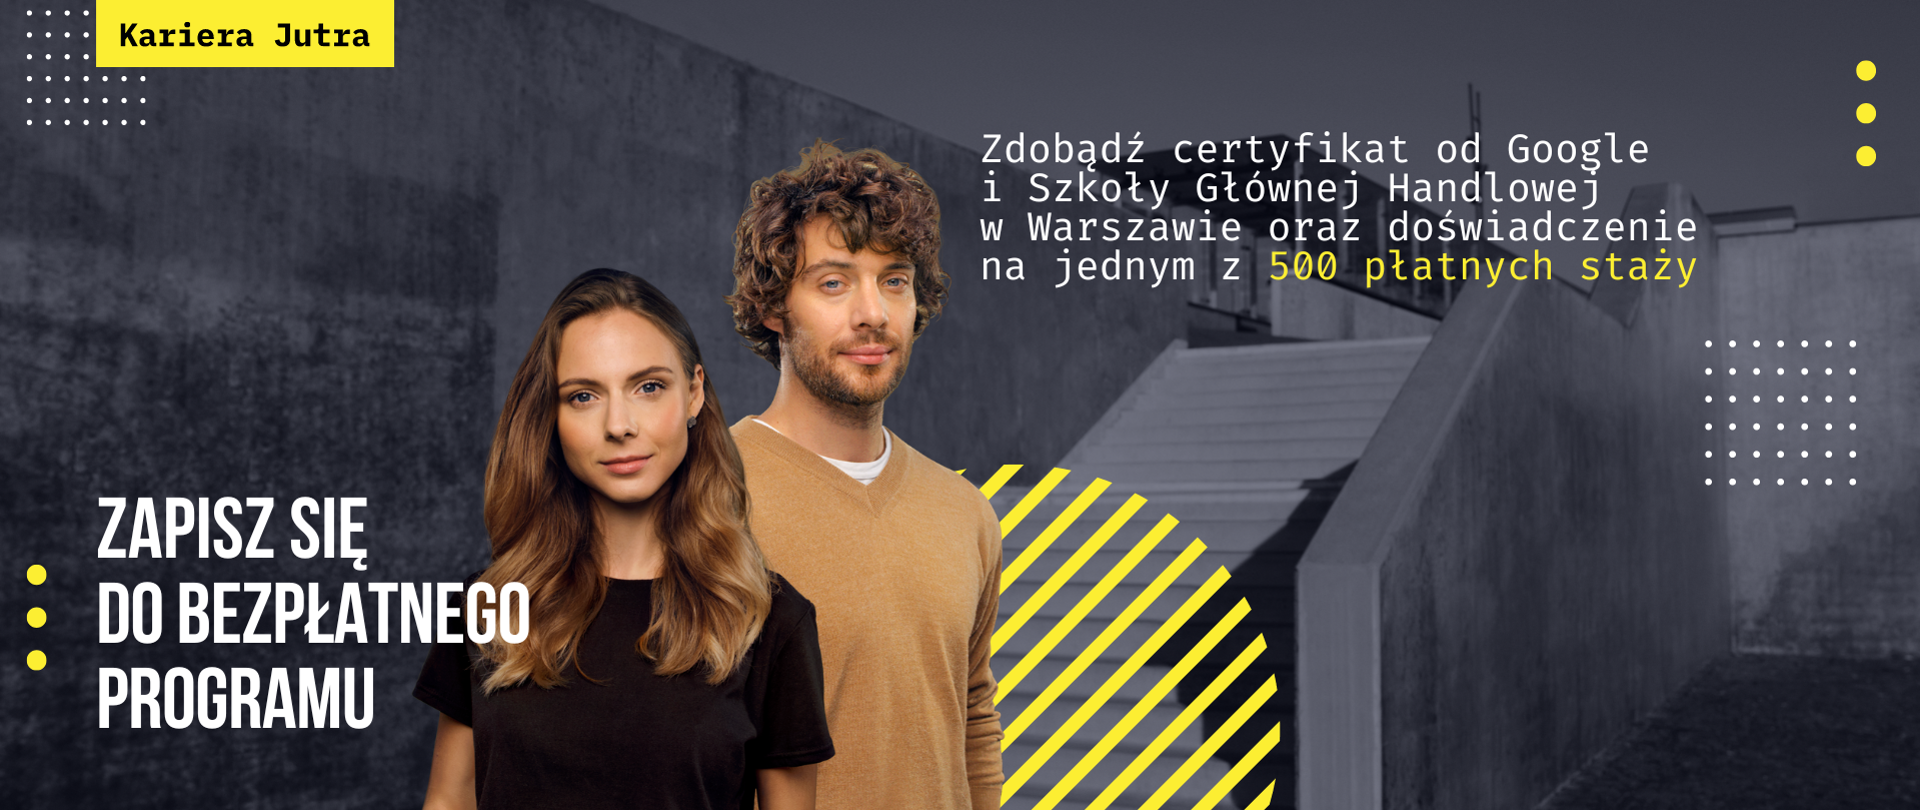 Zdobądź certyfikat od Google i Szkoły Głównej Handlowej w Warszawie oraz doświadczenie na jednym z 500 płatnych staży